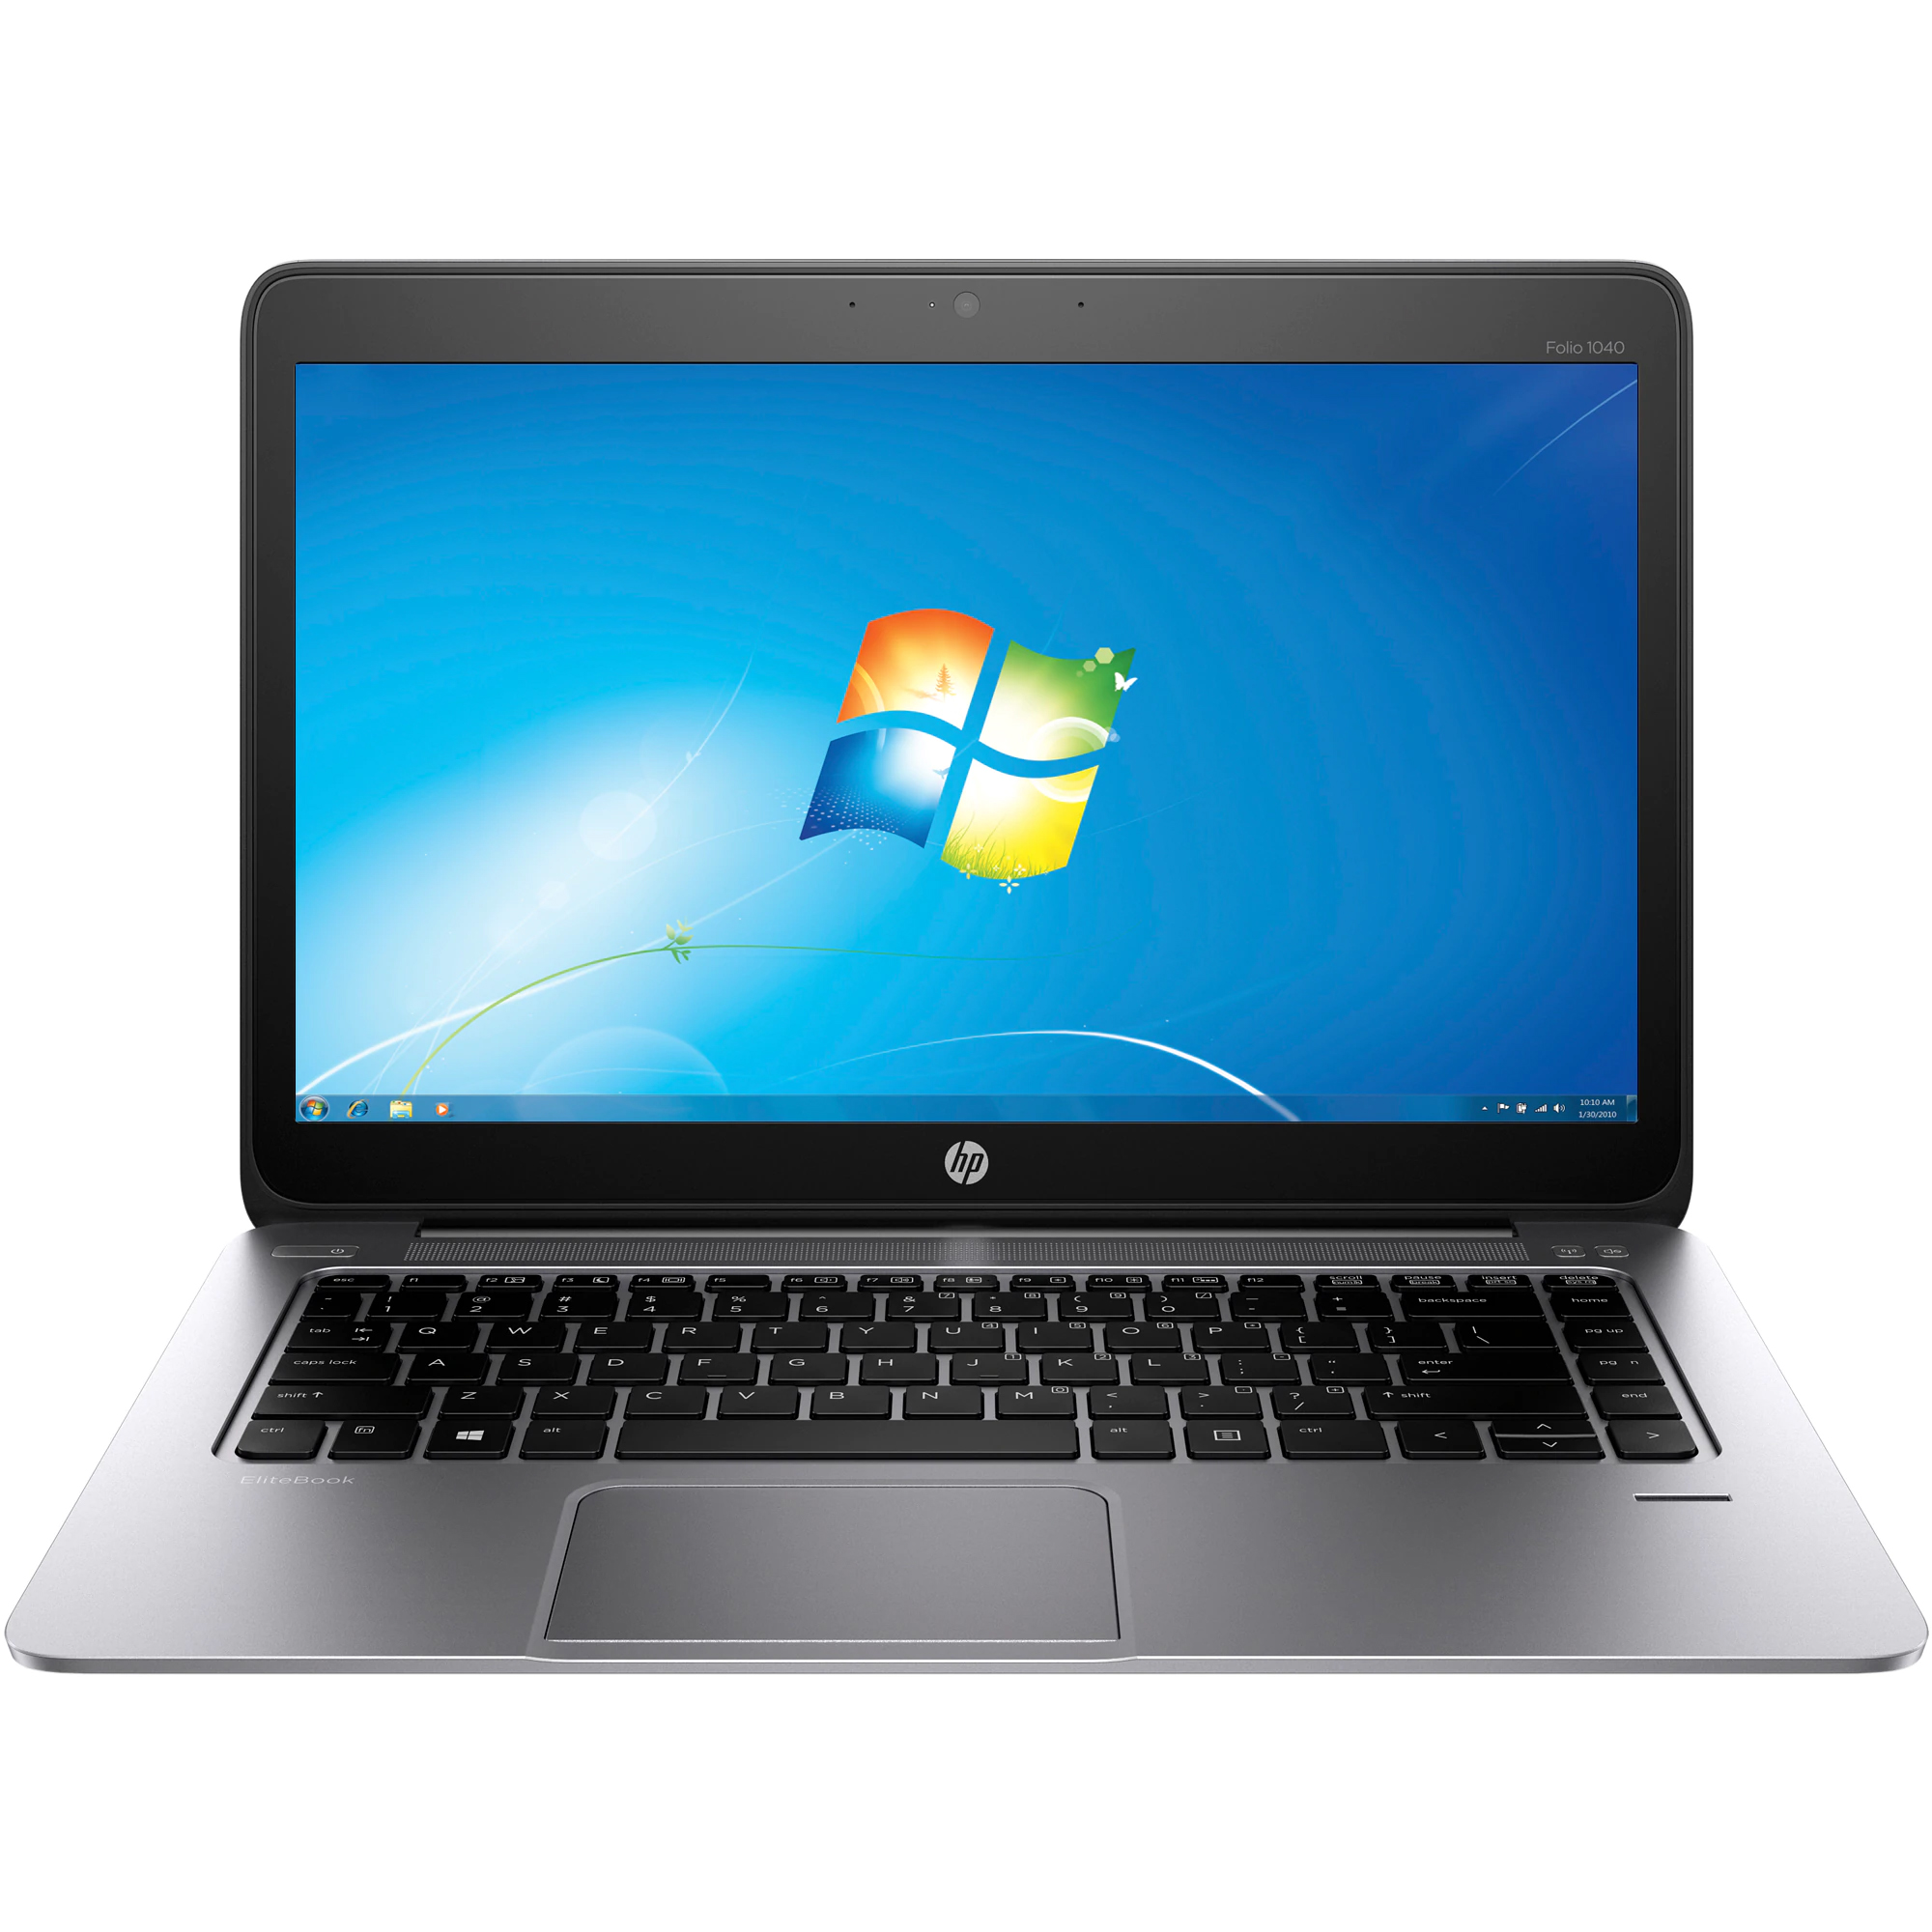 Laptop HP EliteBook Folio 1040 G1, Intel Core i7-4600U 2.10GHz, 8GB DDR3, 256GB SSD M.2, Full HD, Webcam, 14 Inch